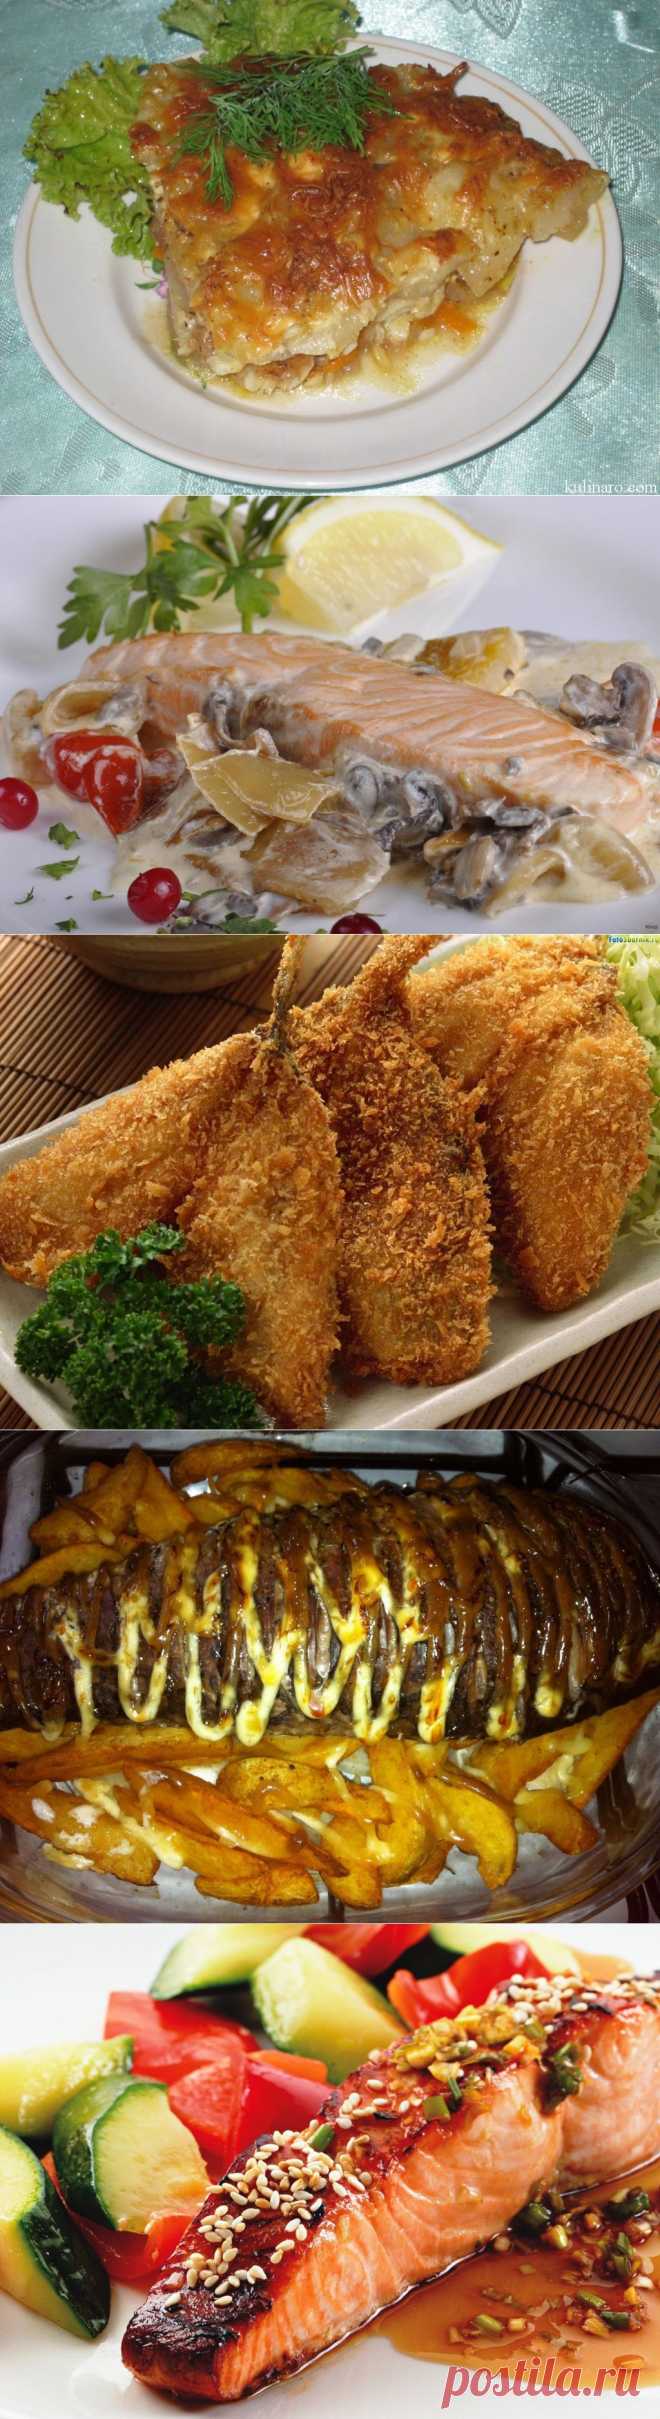 ТОП - 9 Рецептов вкусных рыбных блюд - Сайт "Кулинария для Всех и Каждого"